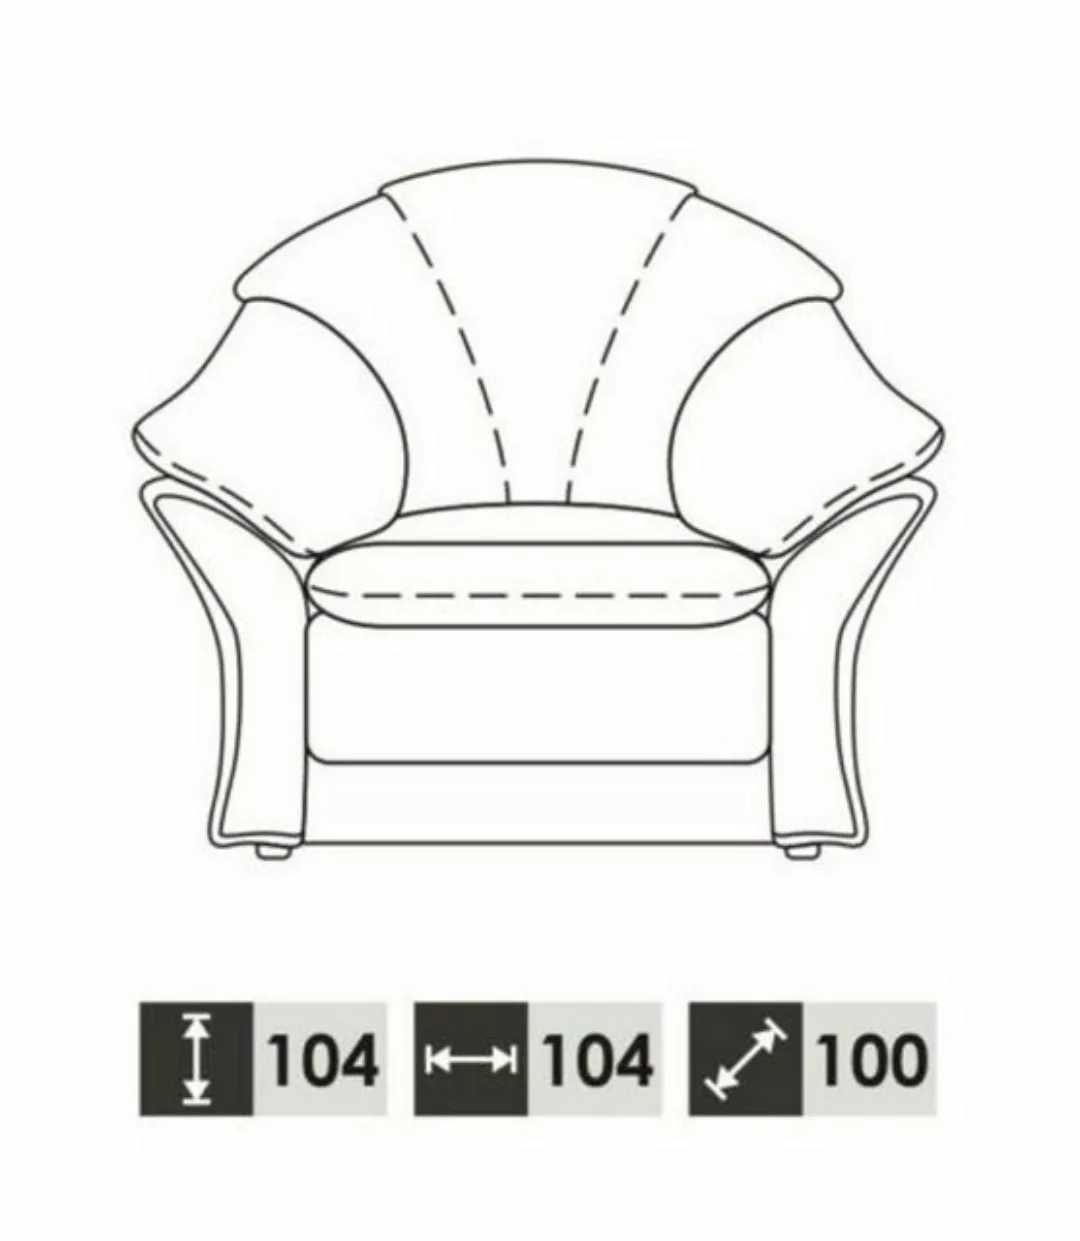 JVmoebel Sofa Weiße Couchgarnitur 3+1 Luxus Sofas Moderne Möbel 2tlg., Made günstig online kaufen